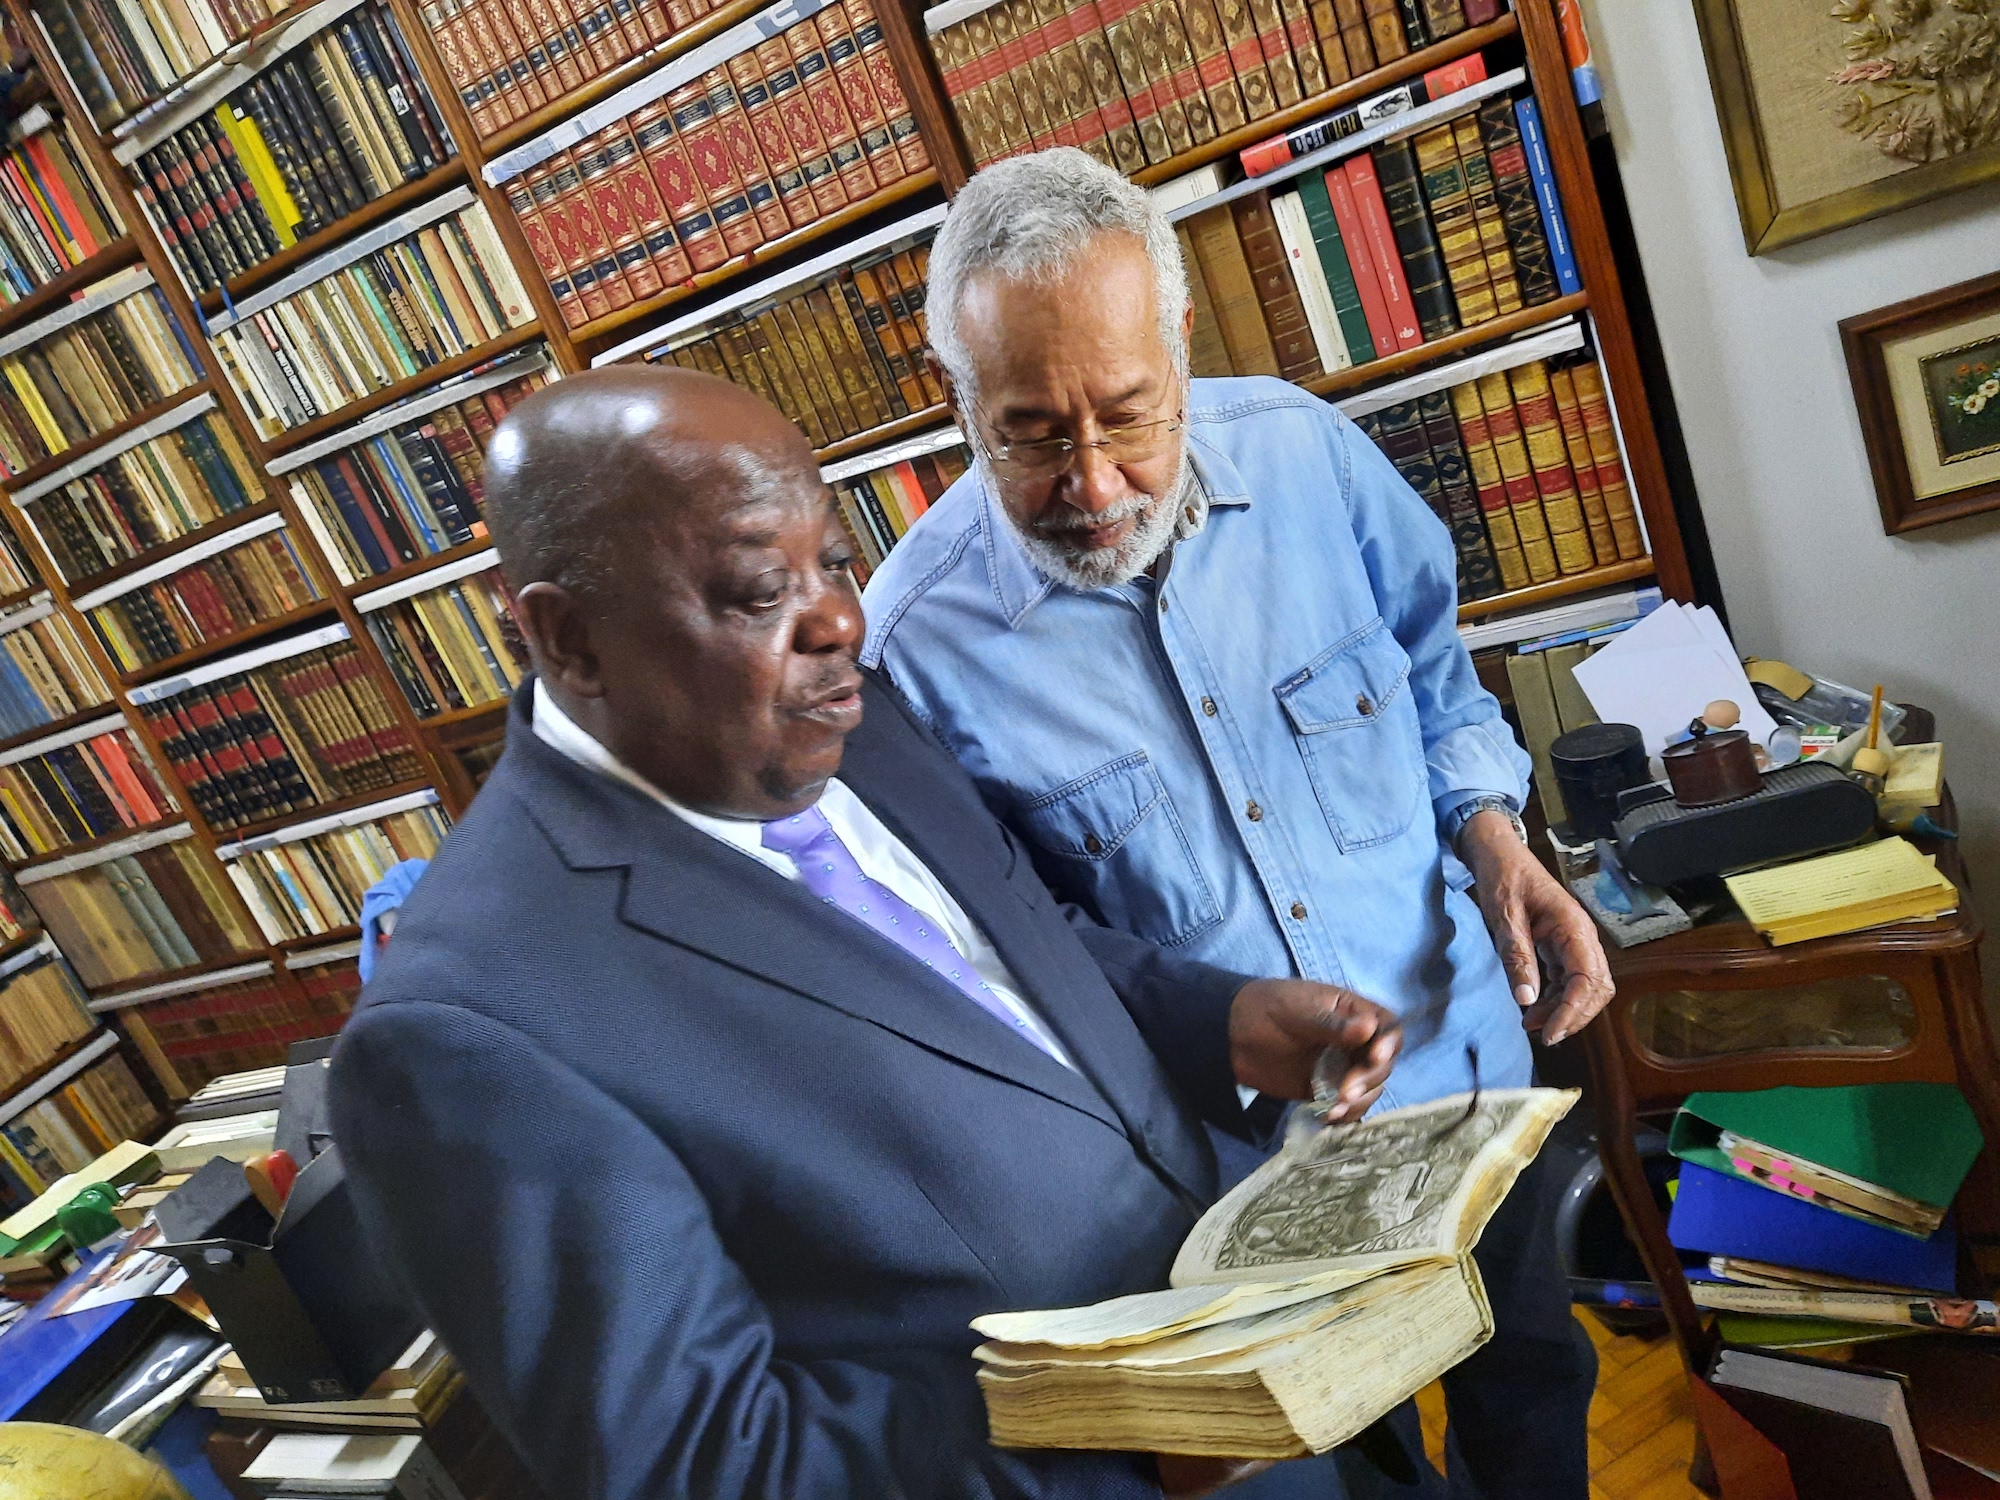 Autor do Tratado da História de Angola visita biblioteca particular com acervo impressionante